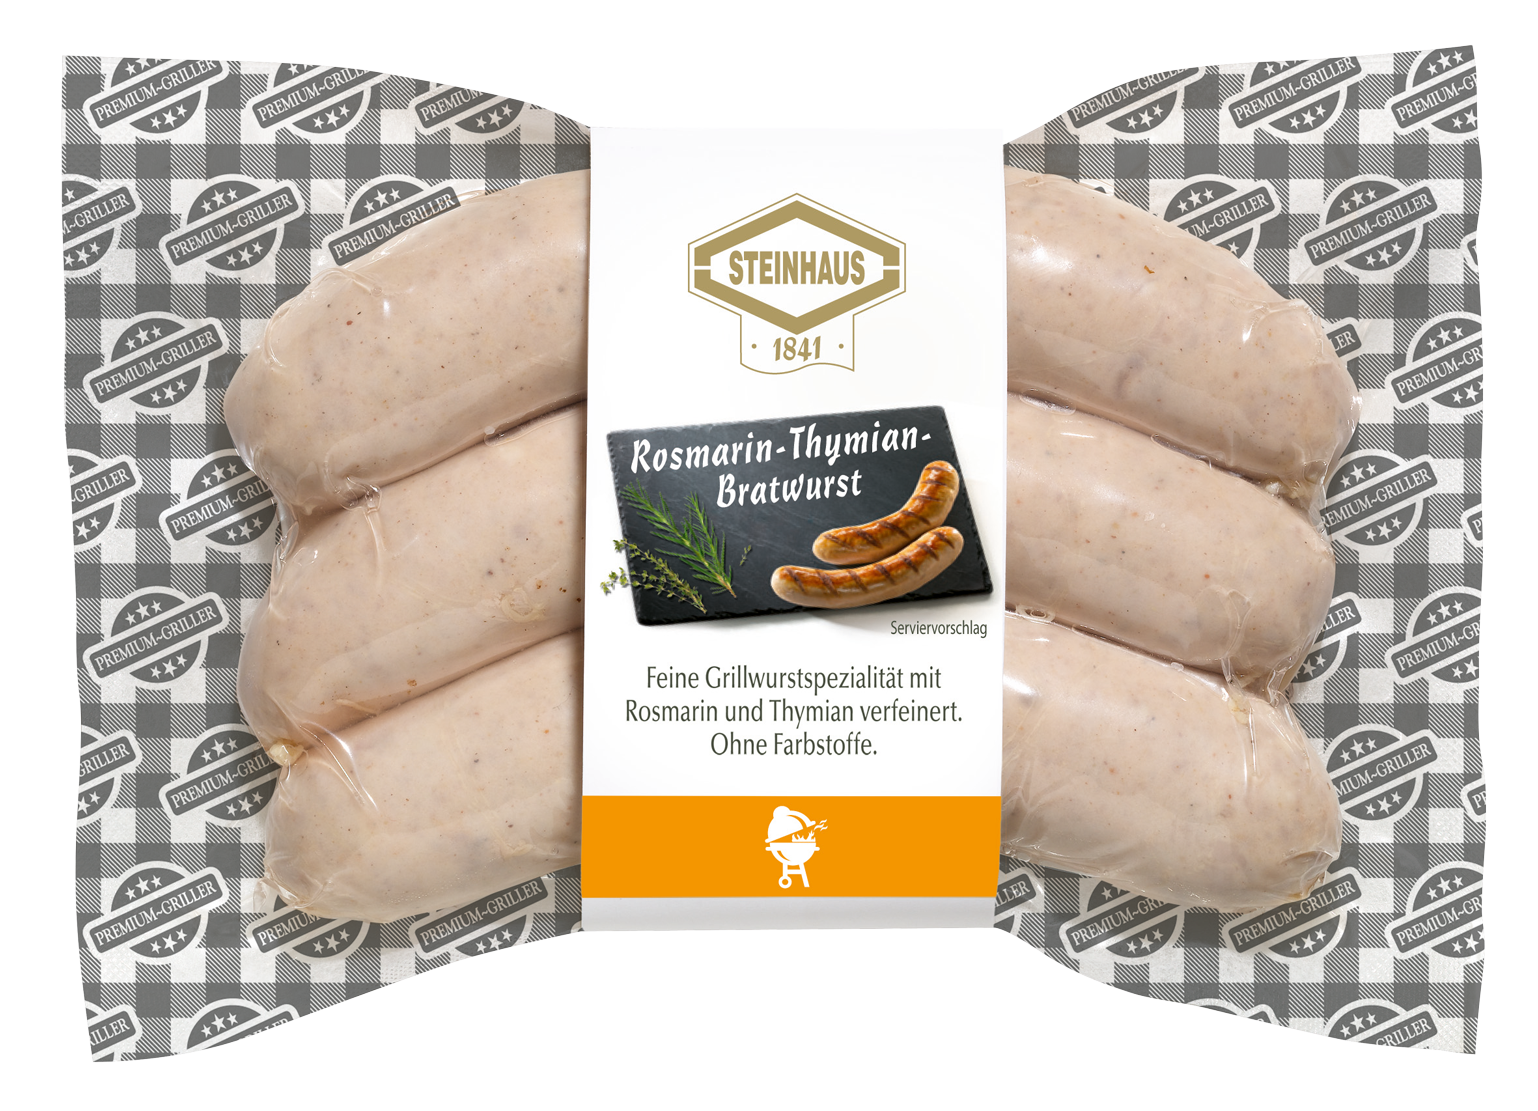 Rosmarin-Thymian Bratwurst – Zarte Bratwurst Spezialität aus feinem Schweinefleisch, verfeinert mit wohlschmeckendem Rosmarin und Thymian – für den Hauch von mediterranem für Zuhause.